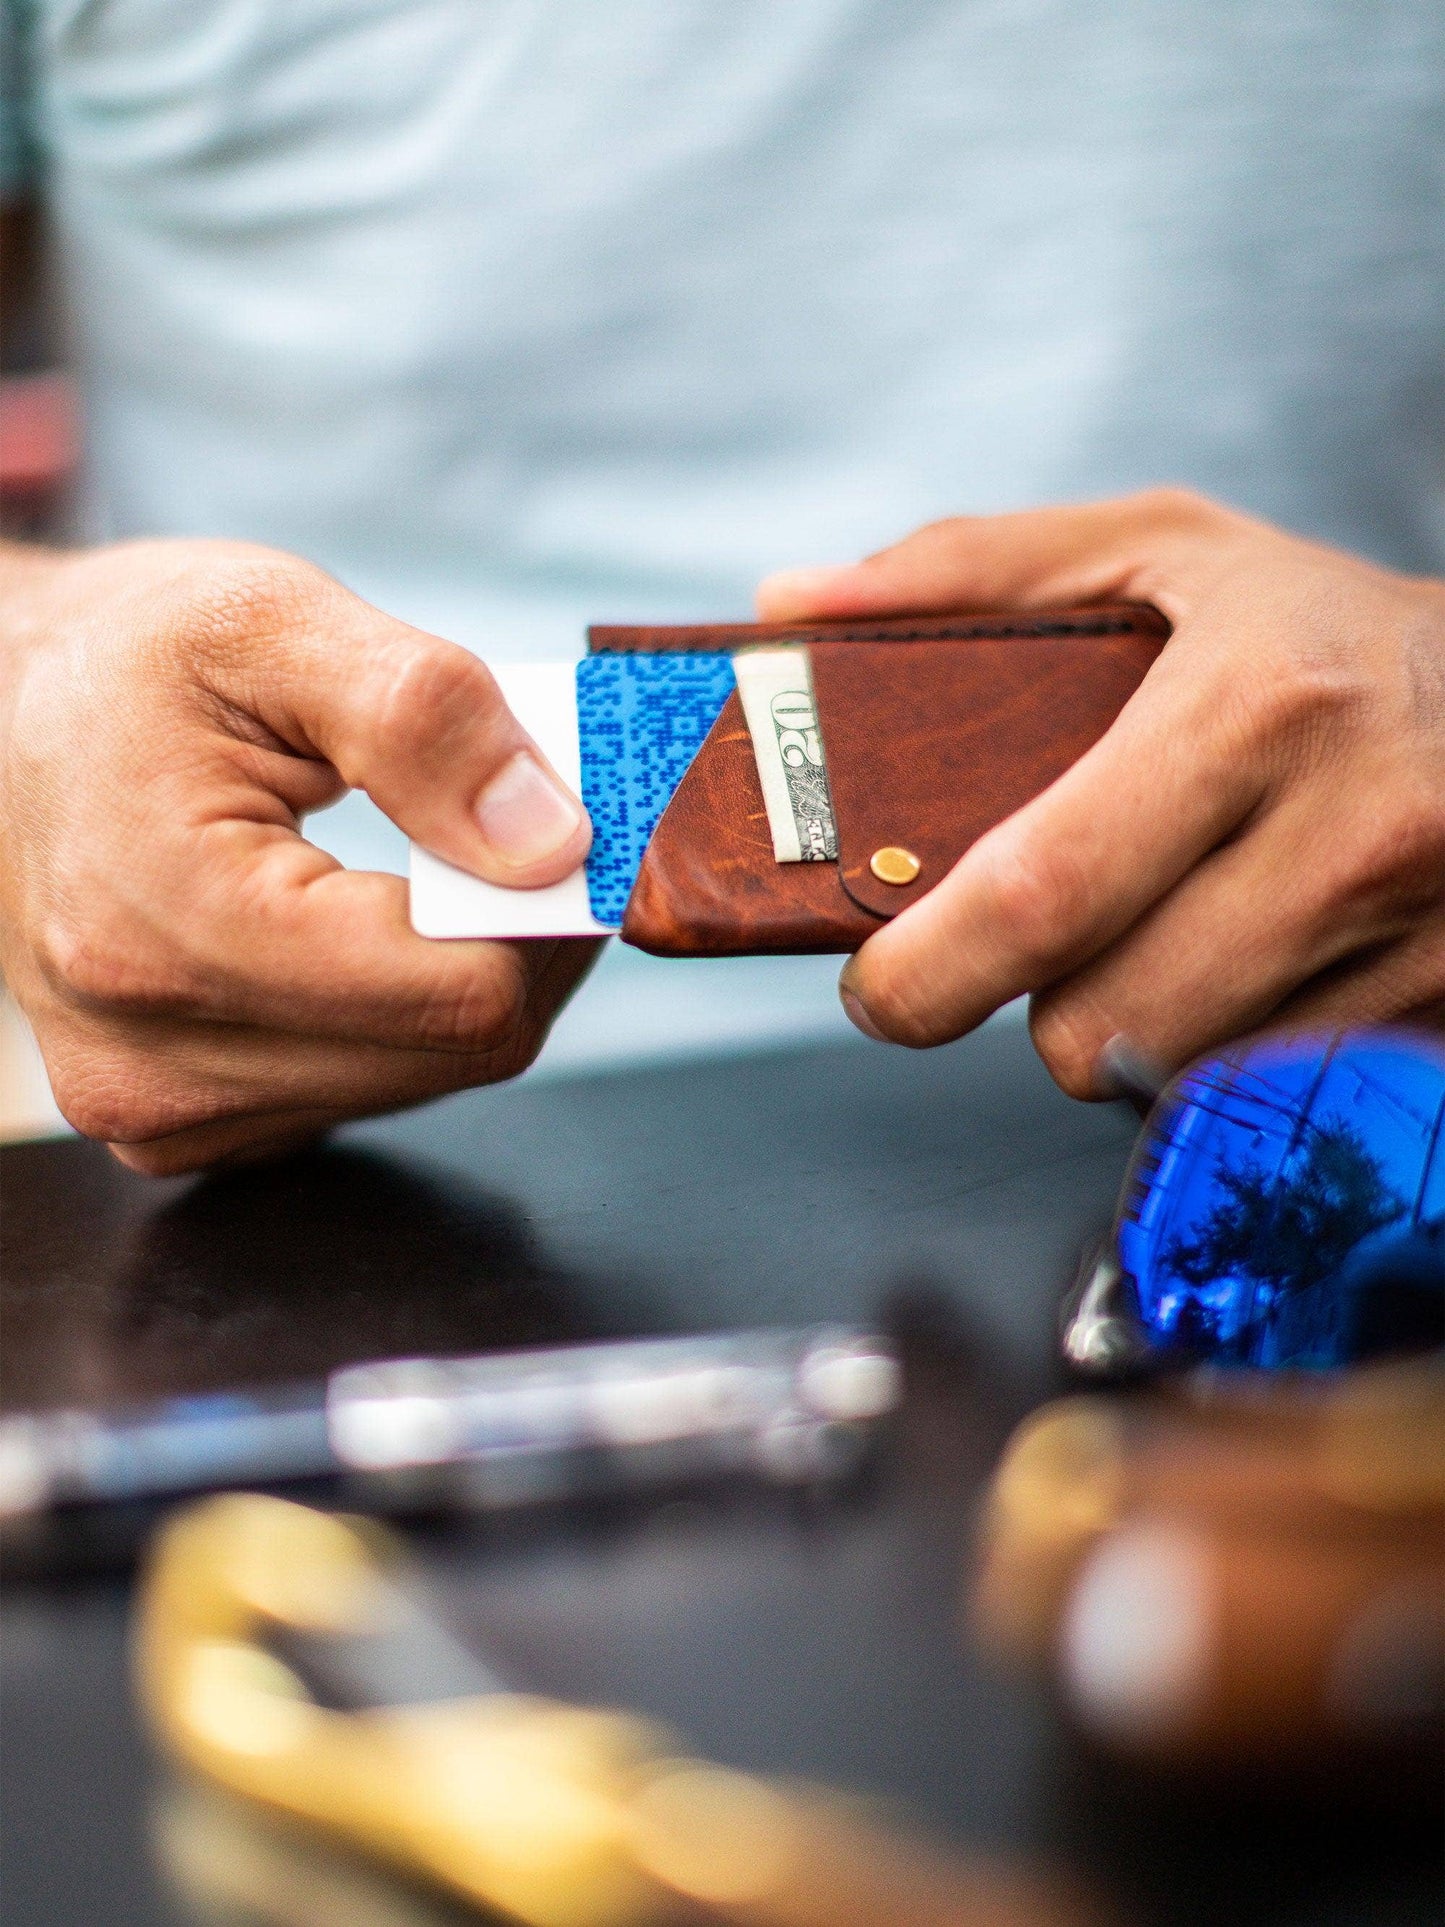 Big Spender Leather Wallet – Pecan – Slim Card Holder